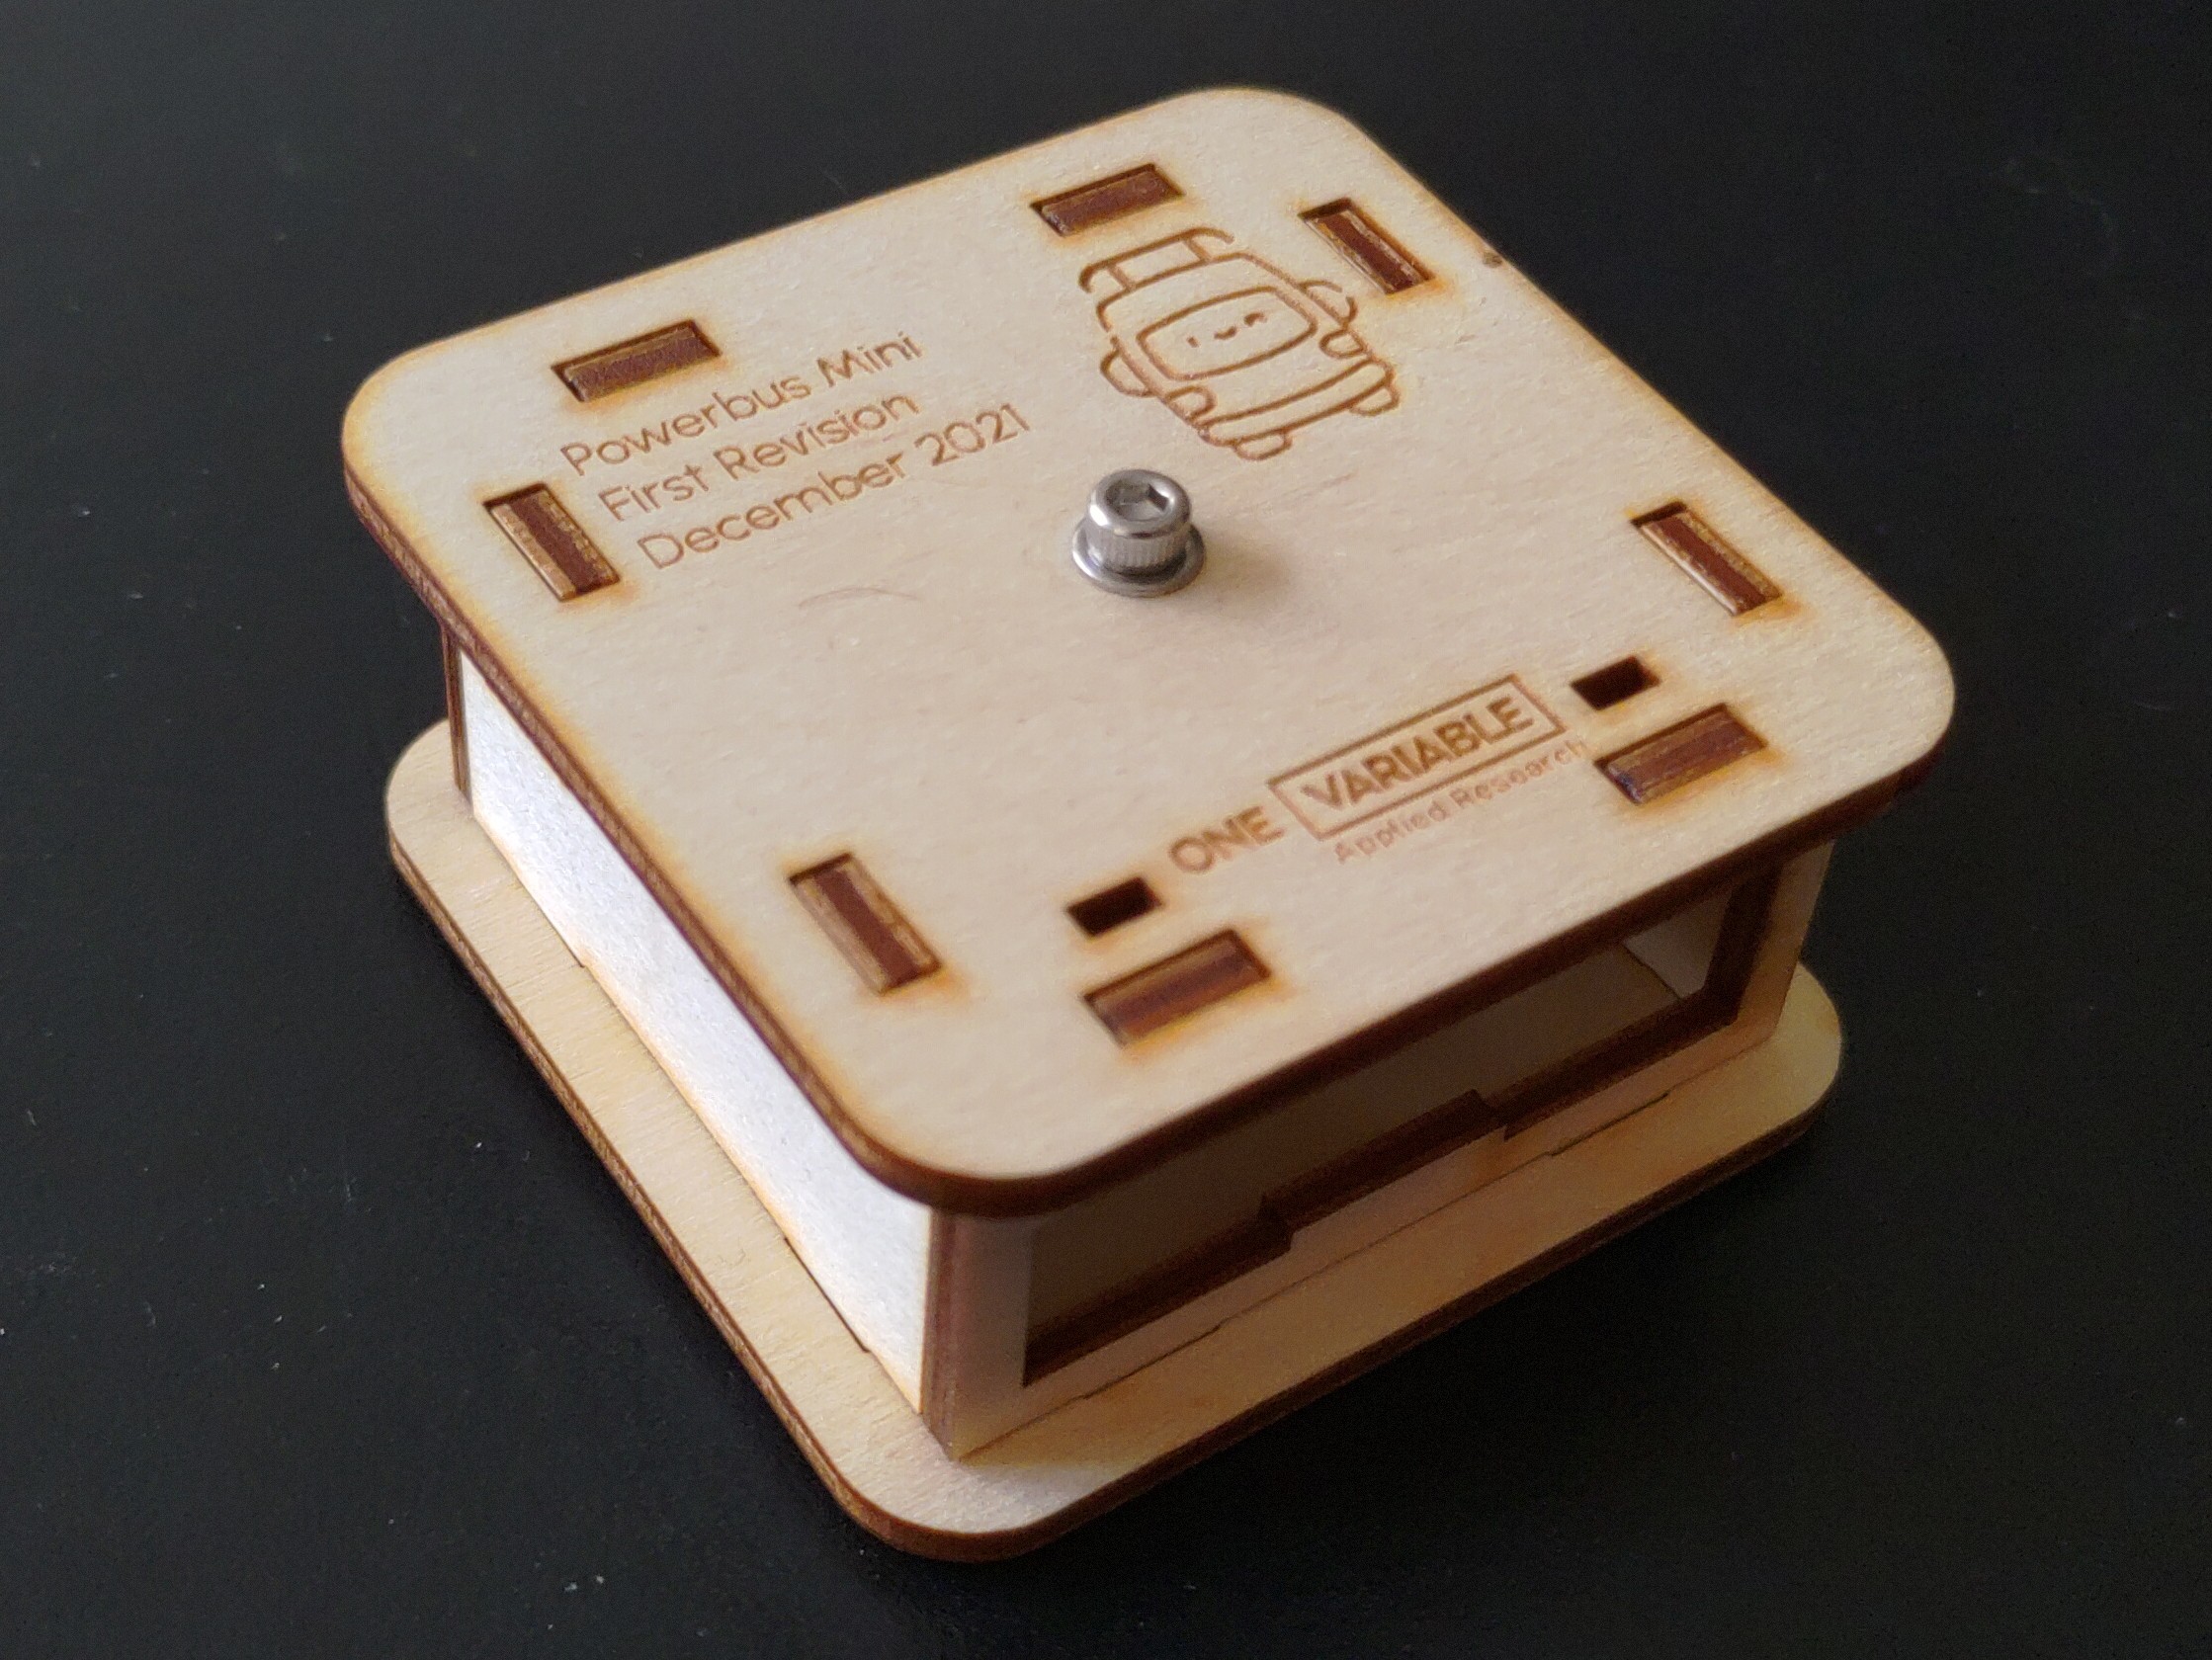 A laser-cut wooden case, assembled